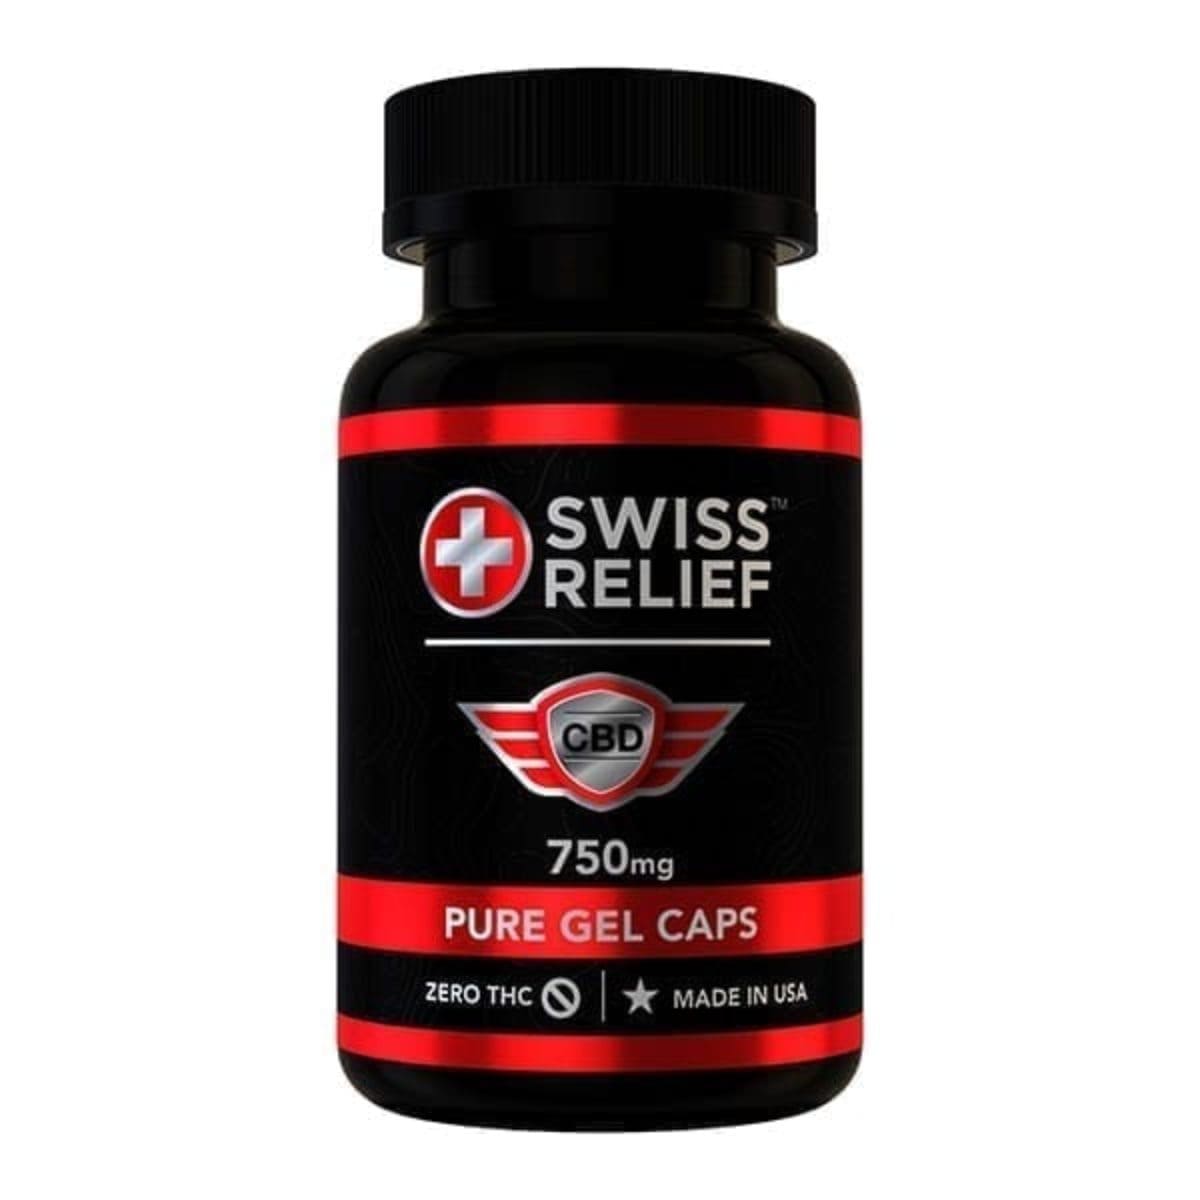 Swiss Relief 25mg CBD Gel Caps image1